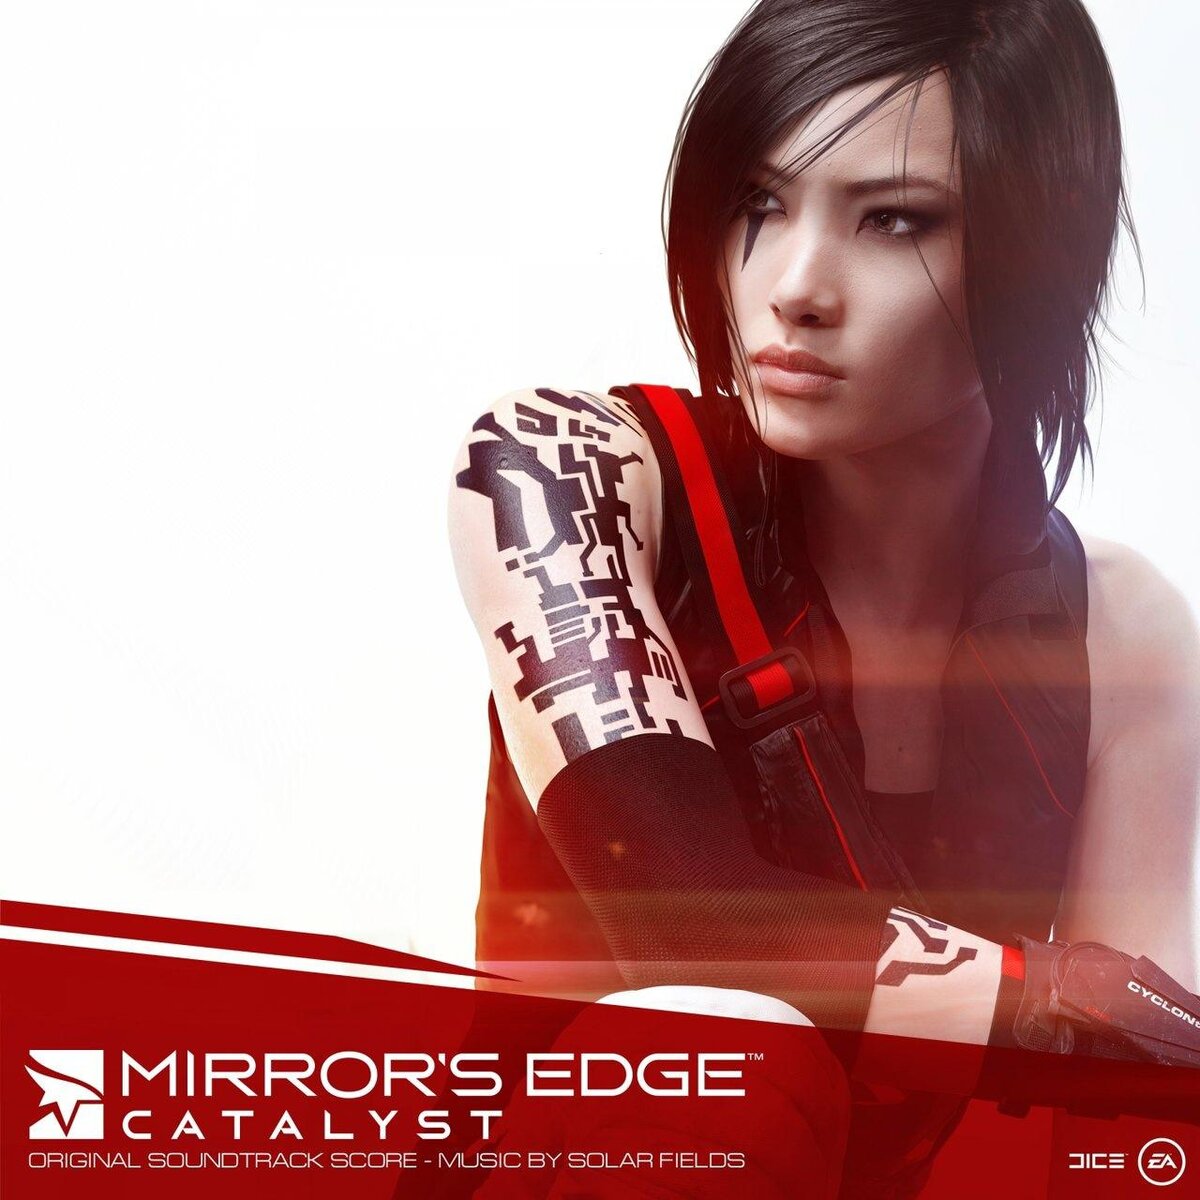 Mirror’s Edge Catalyst, перезапуск игры 2008 года, состоялся в 2016.